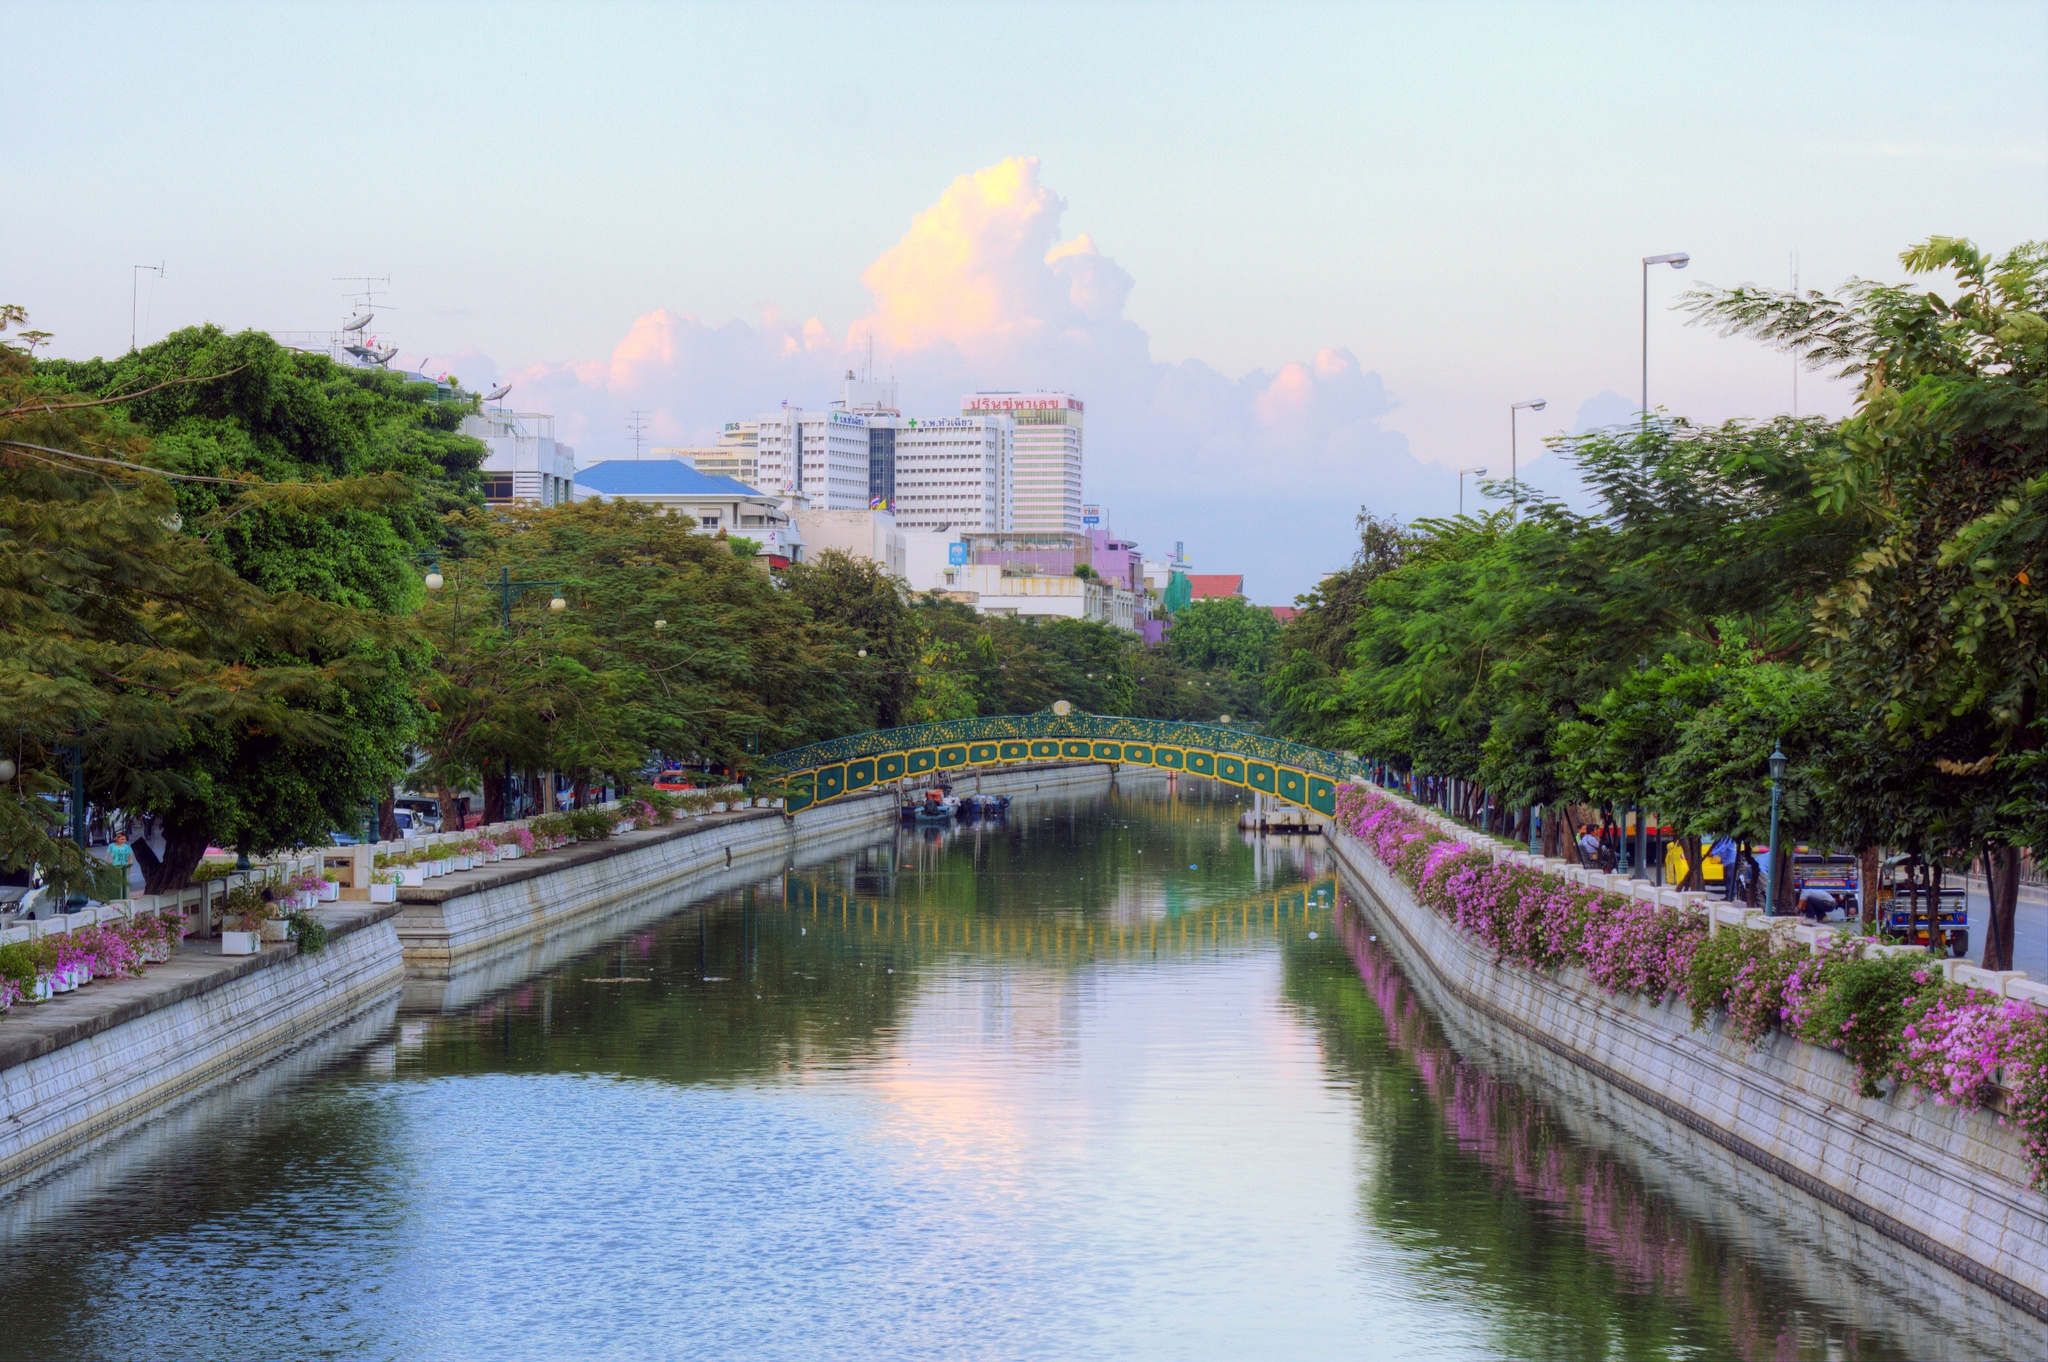 Bangkok Canal